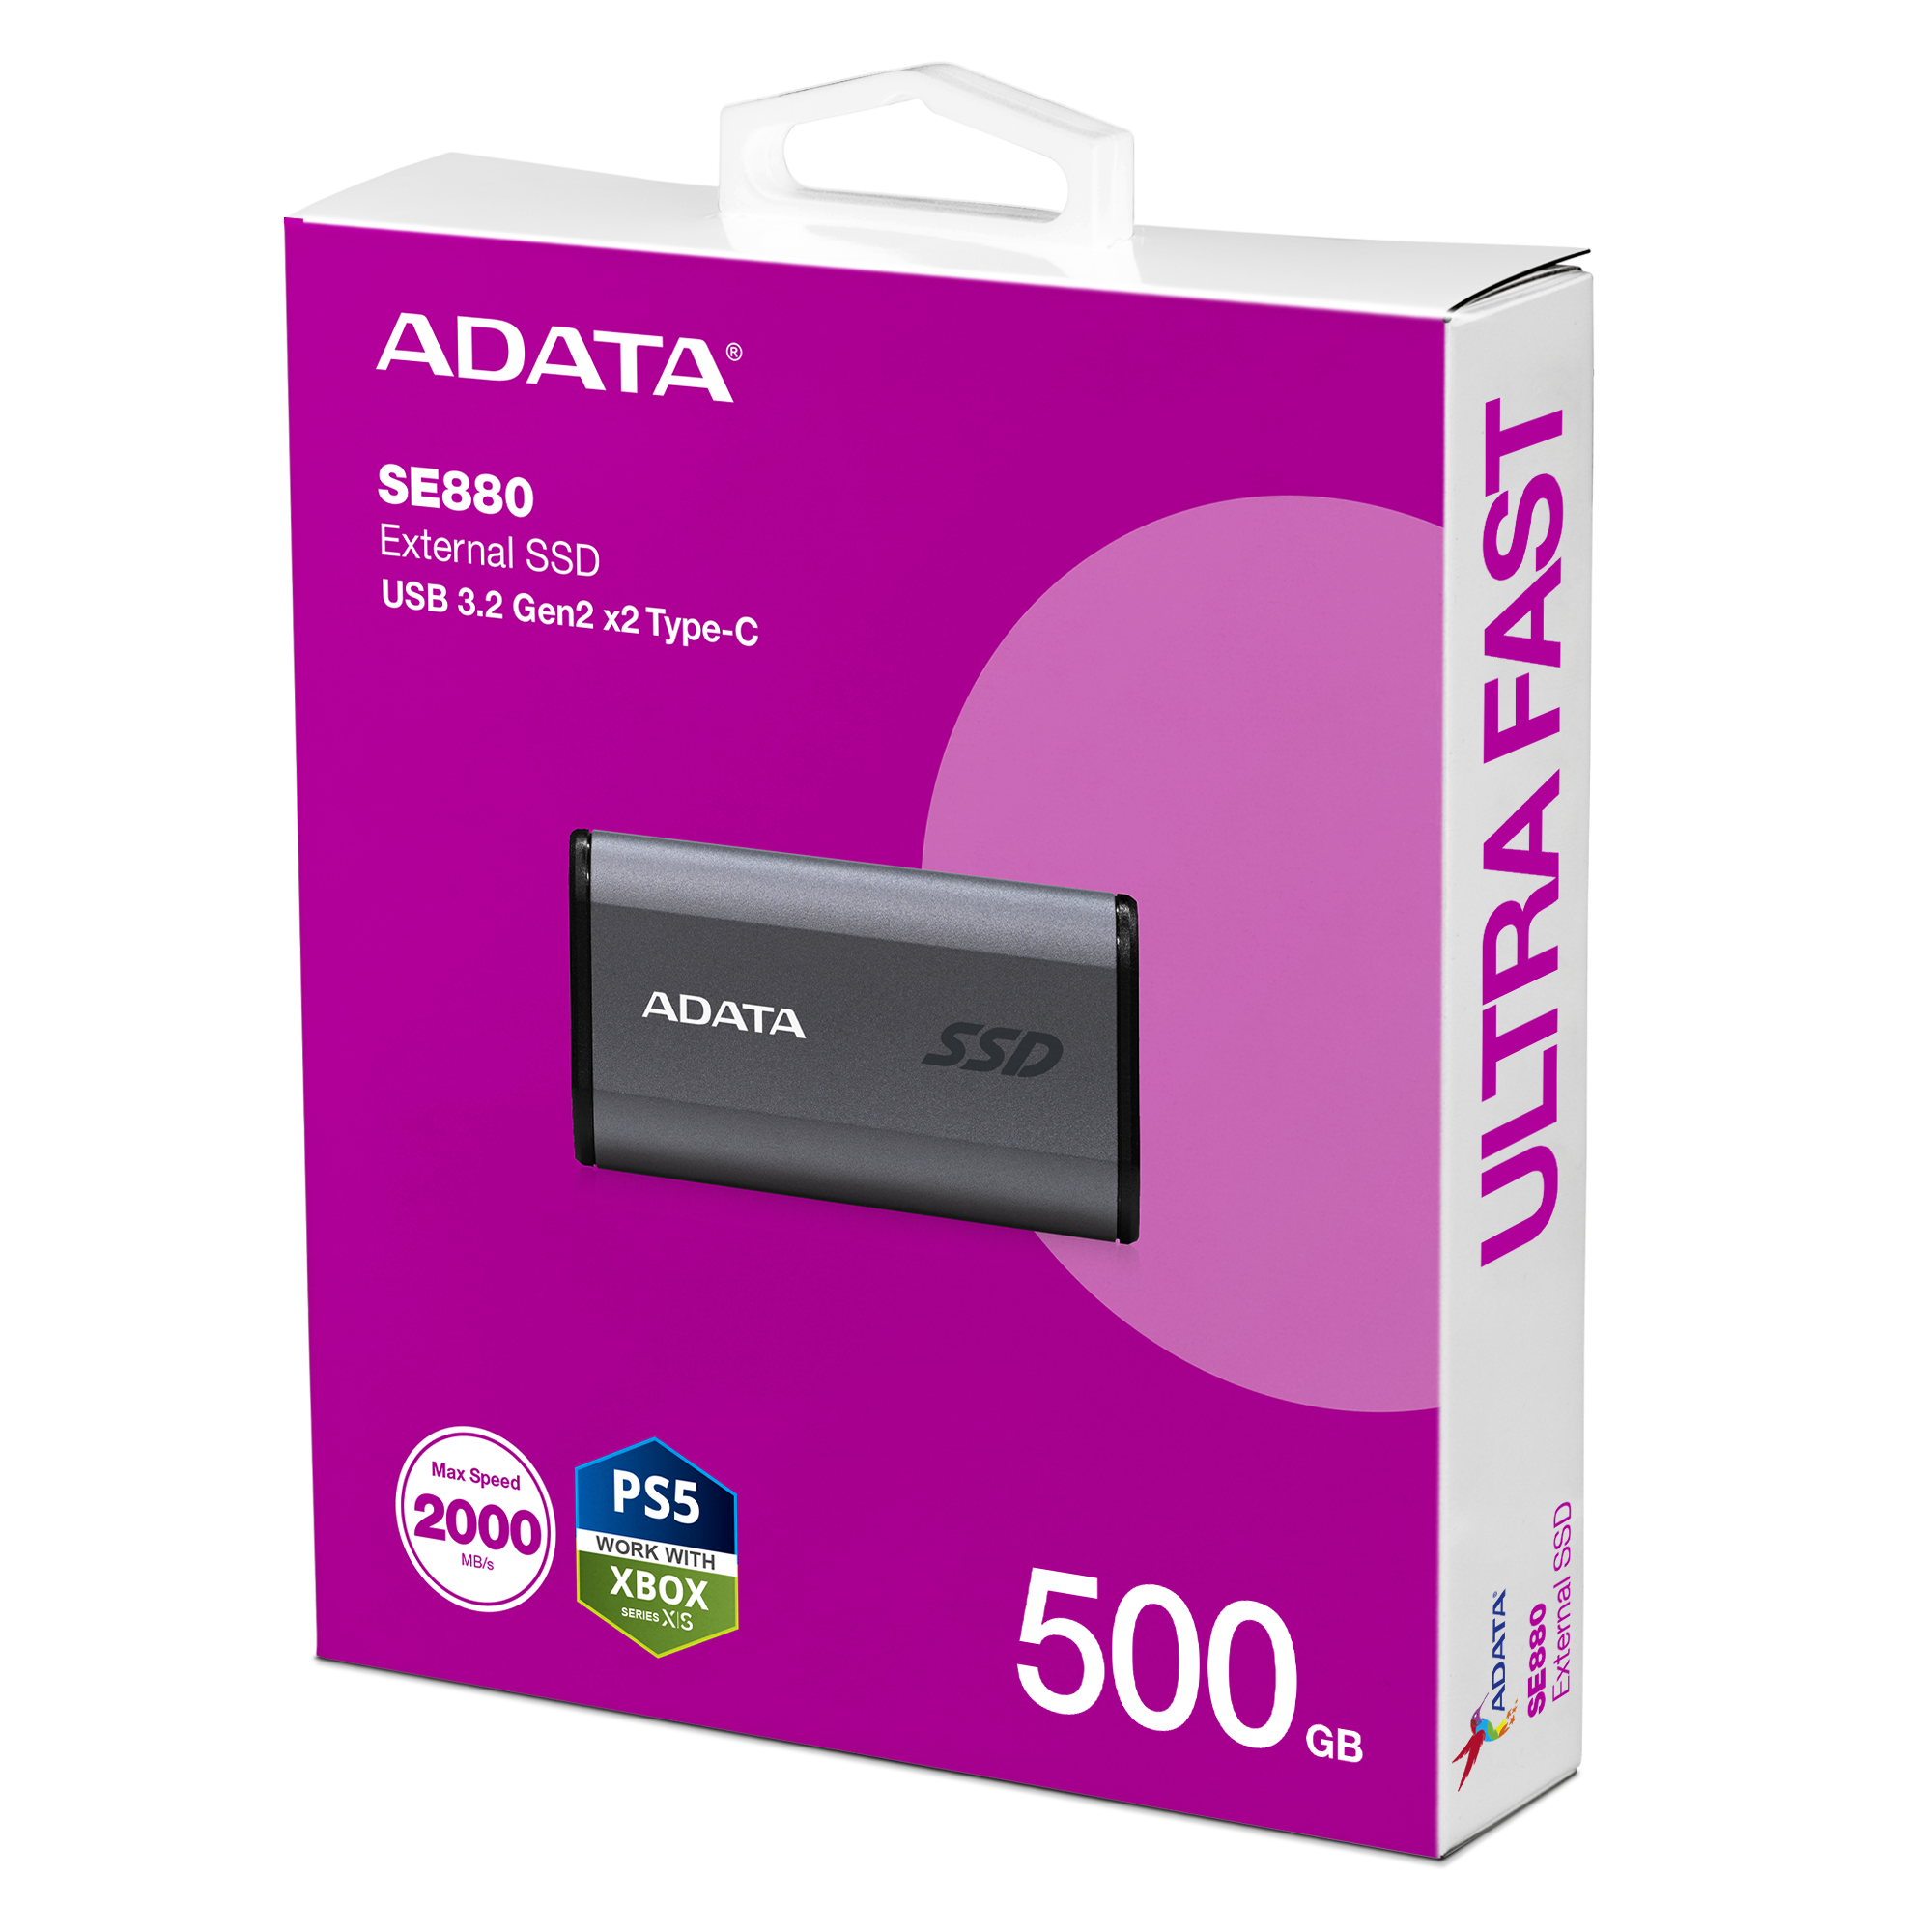 ADATA Elite SE880 | External SSD